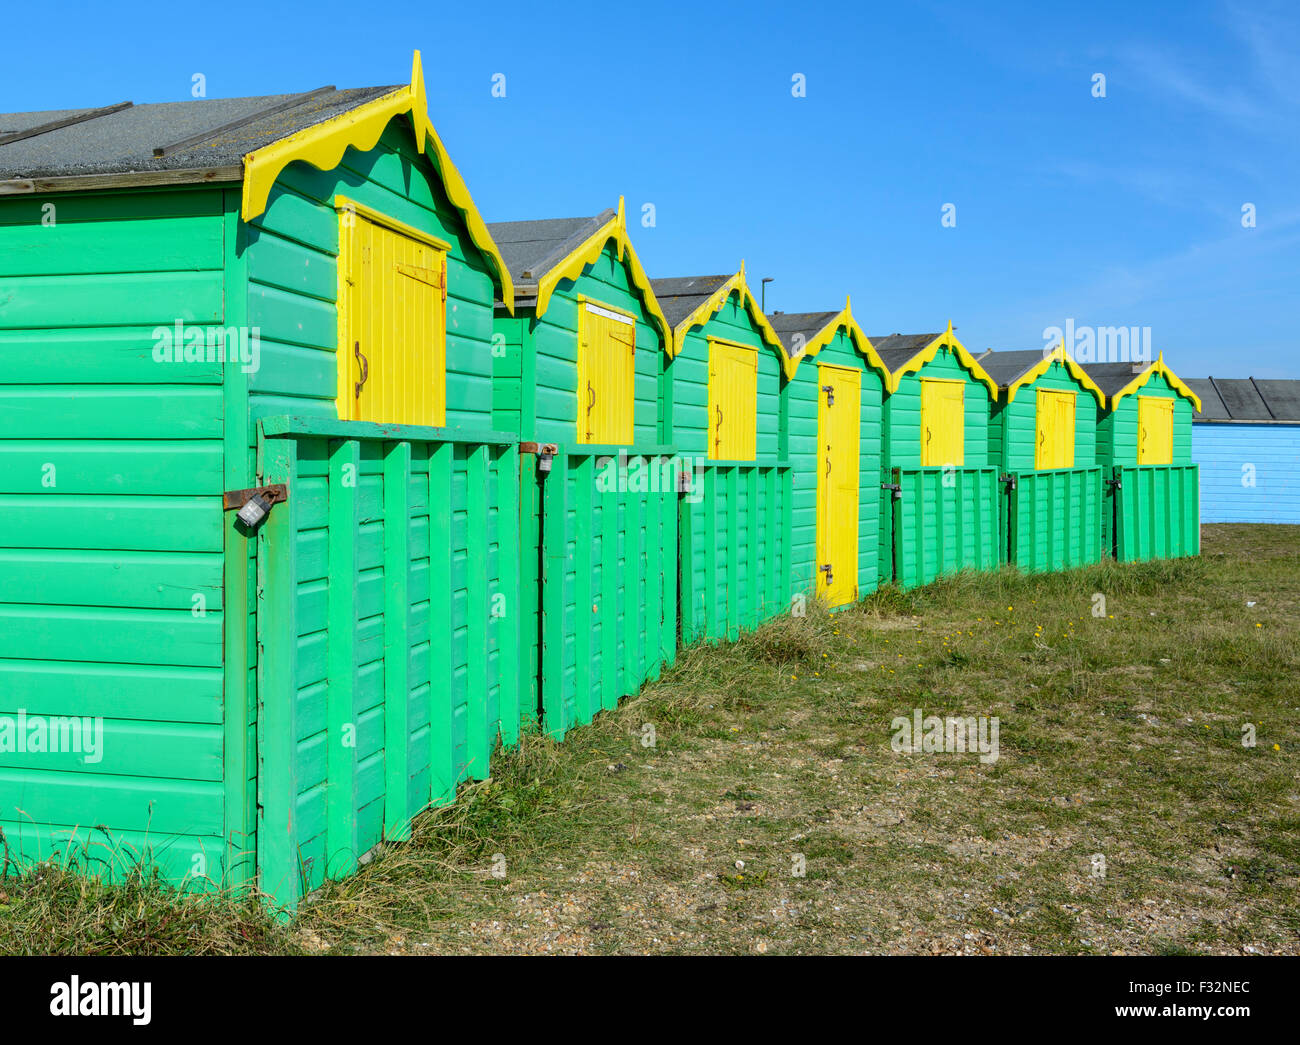 Badehäuschen UK. Strandhütten an einem sonnigen Tag mit blauem Himmel in Littlehampton, West Sussex, England, UK. Stockfoto